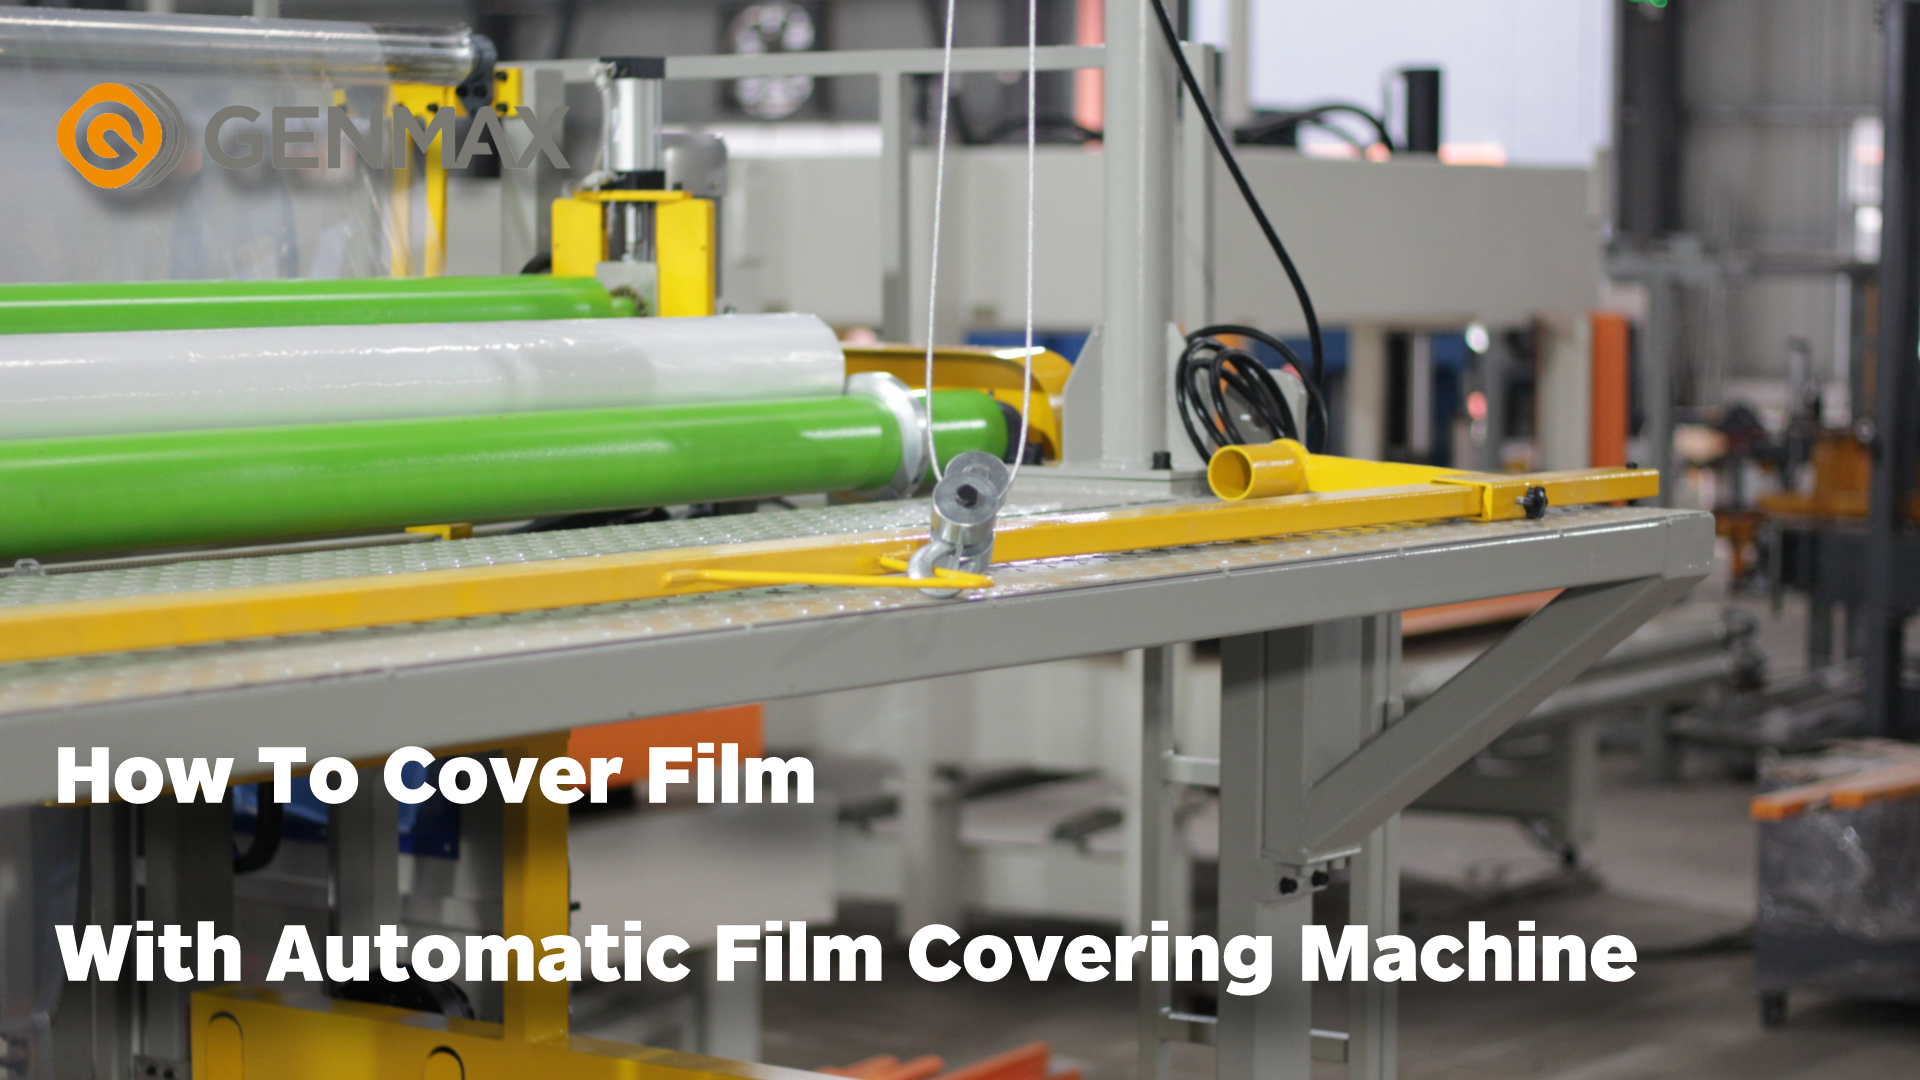 Comment recouvrir un film avec une machine de recouvrement de film automatique